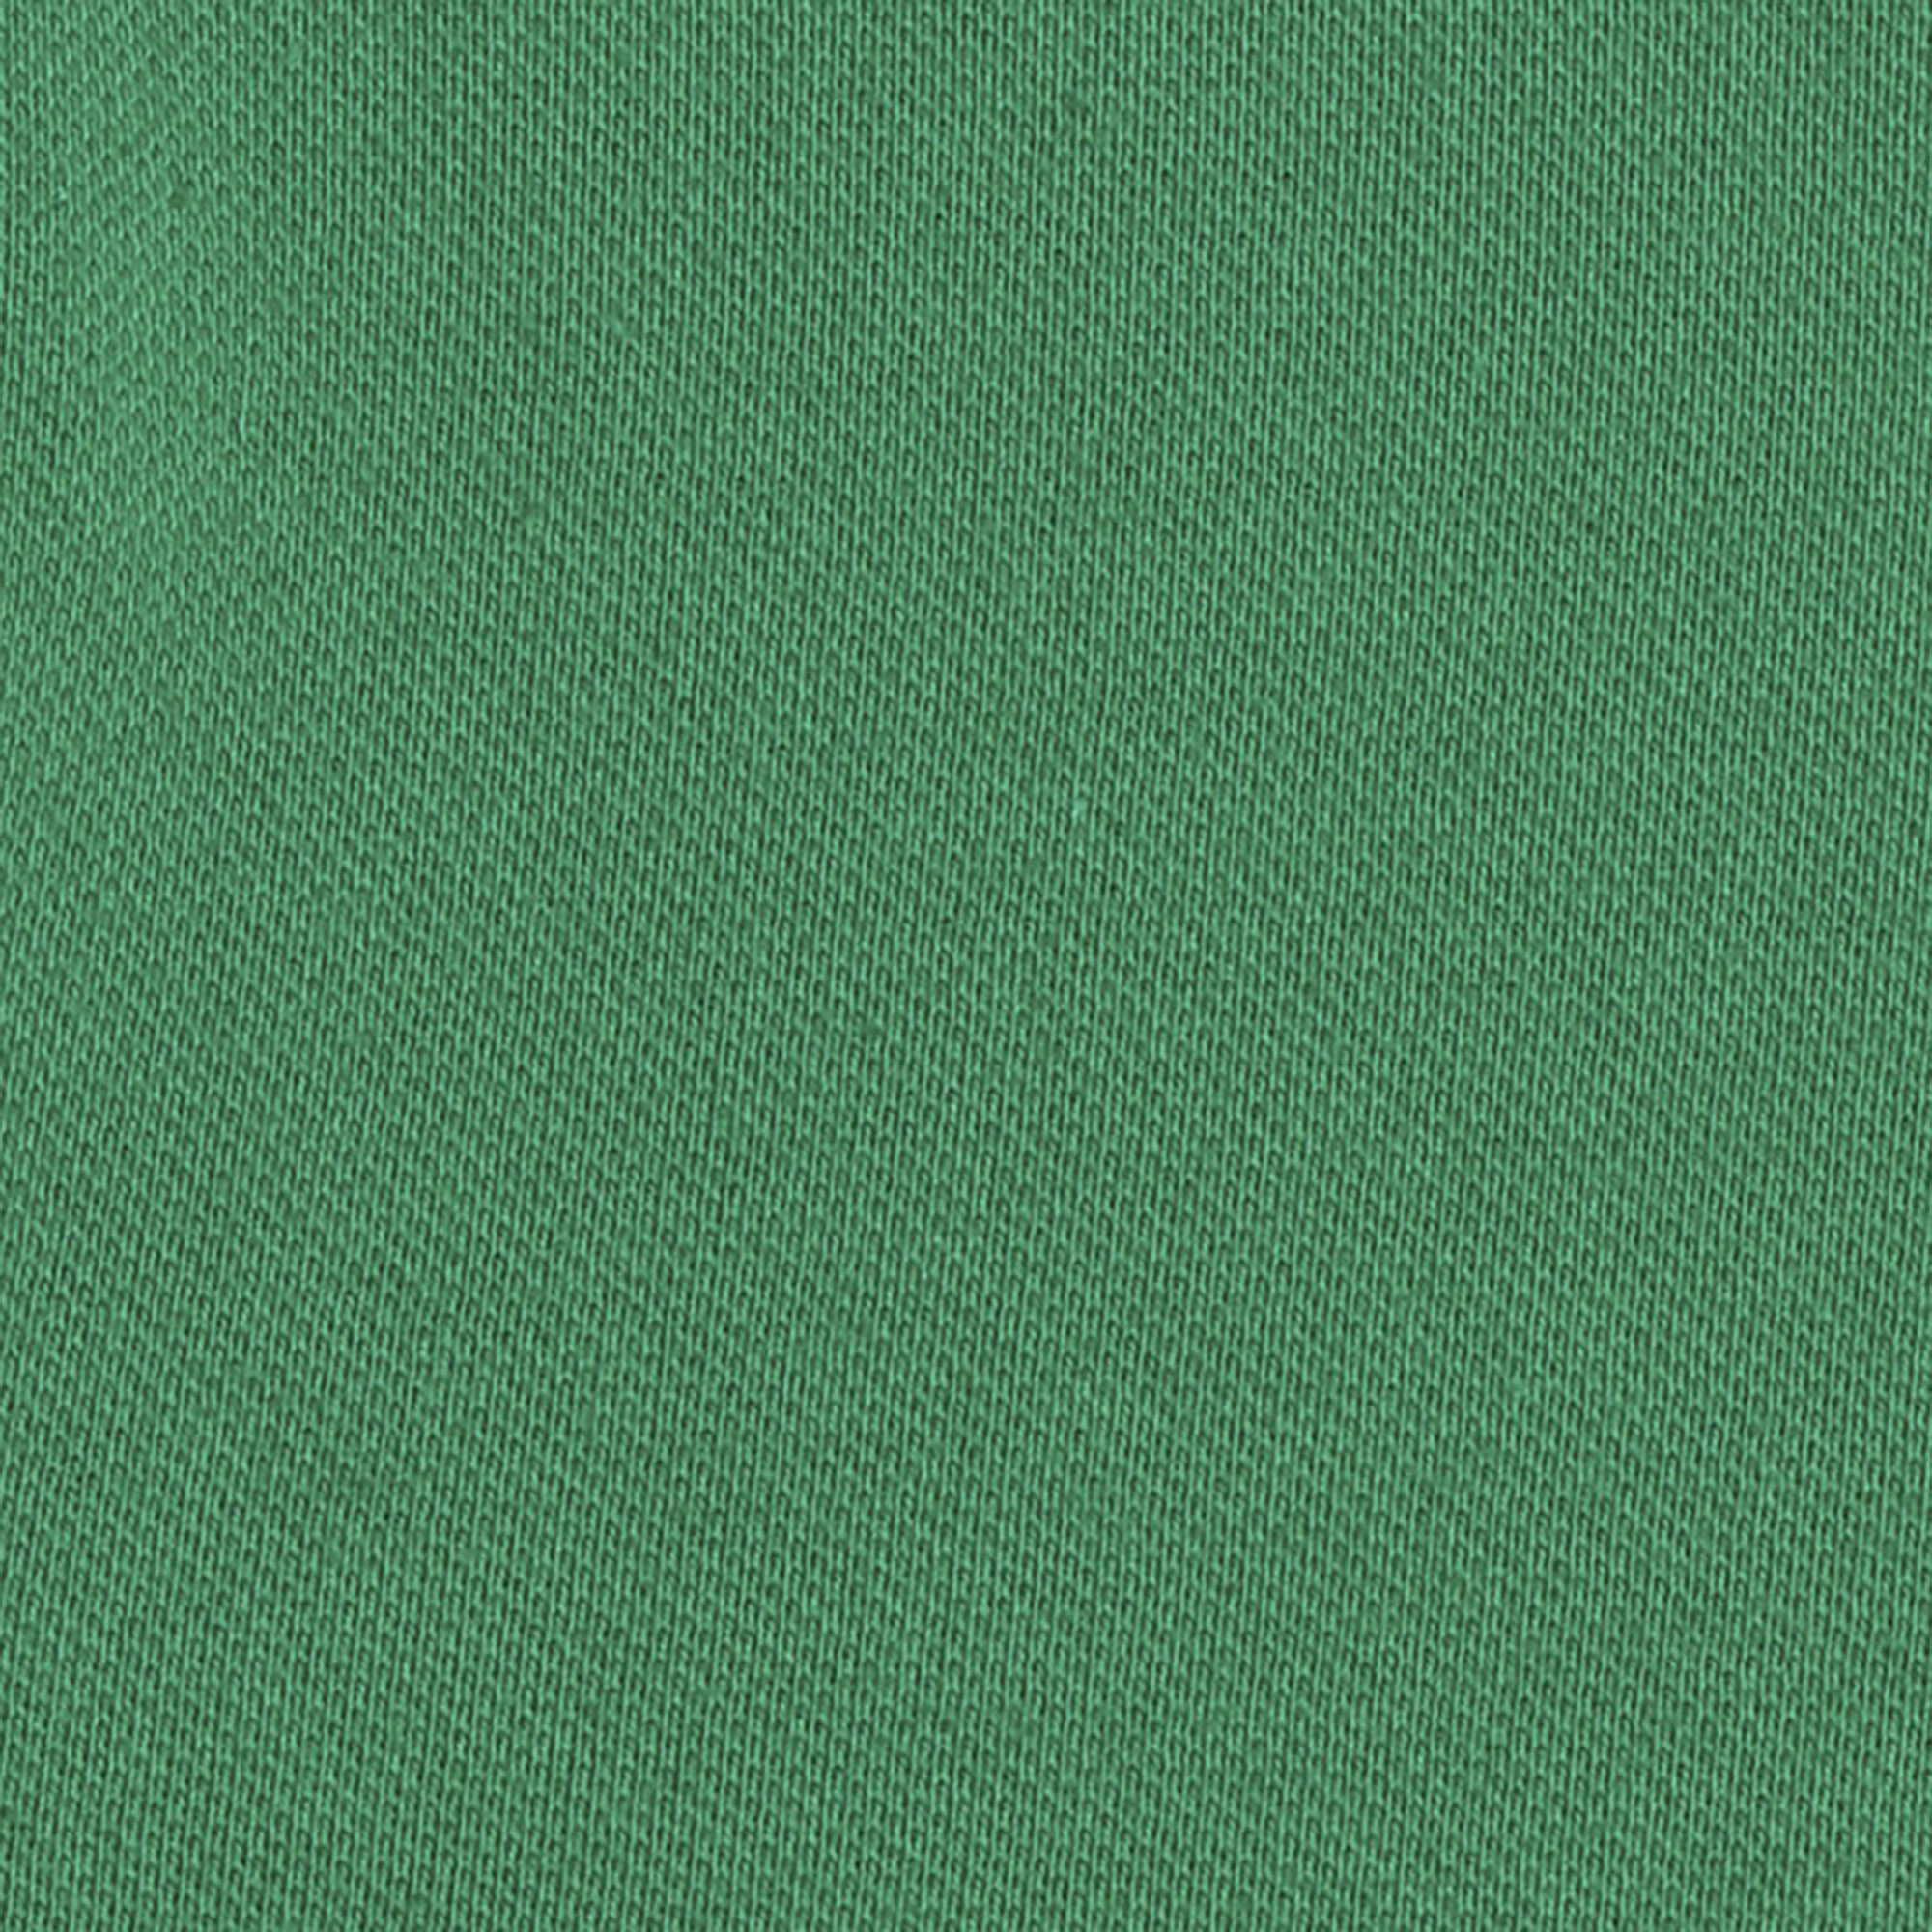 Женское поло AMADEY с коротким рукавом  XXL зеленое, цвет зеленый, размер XXL - фото 5